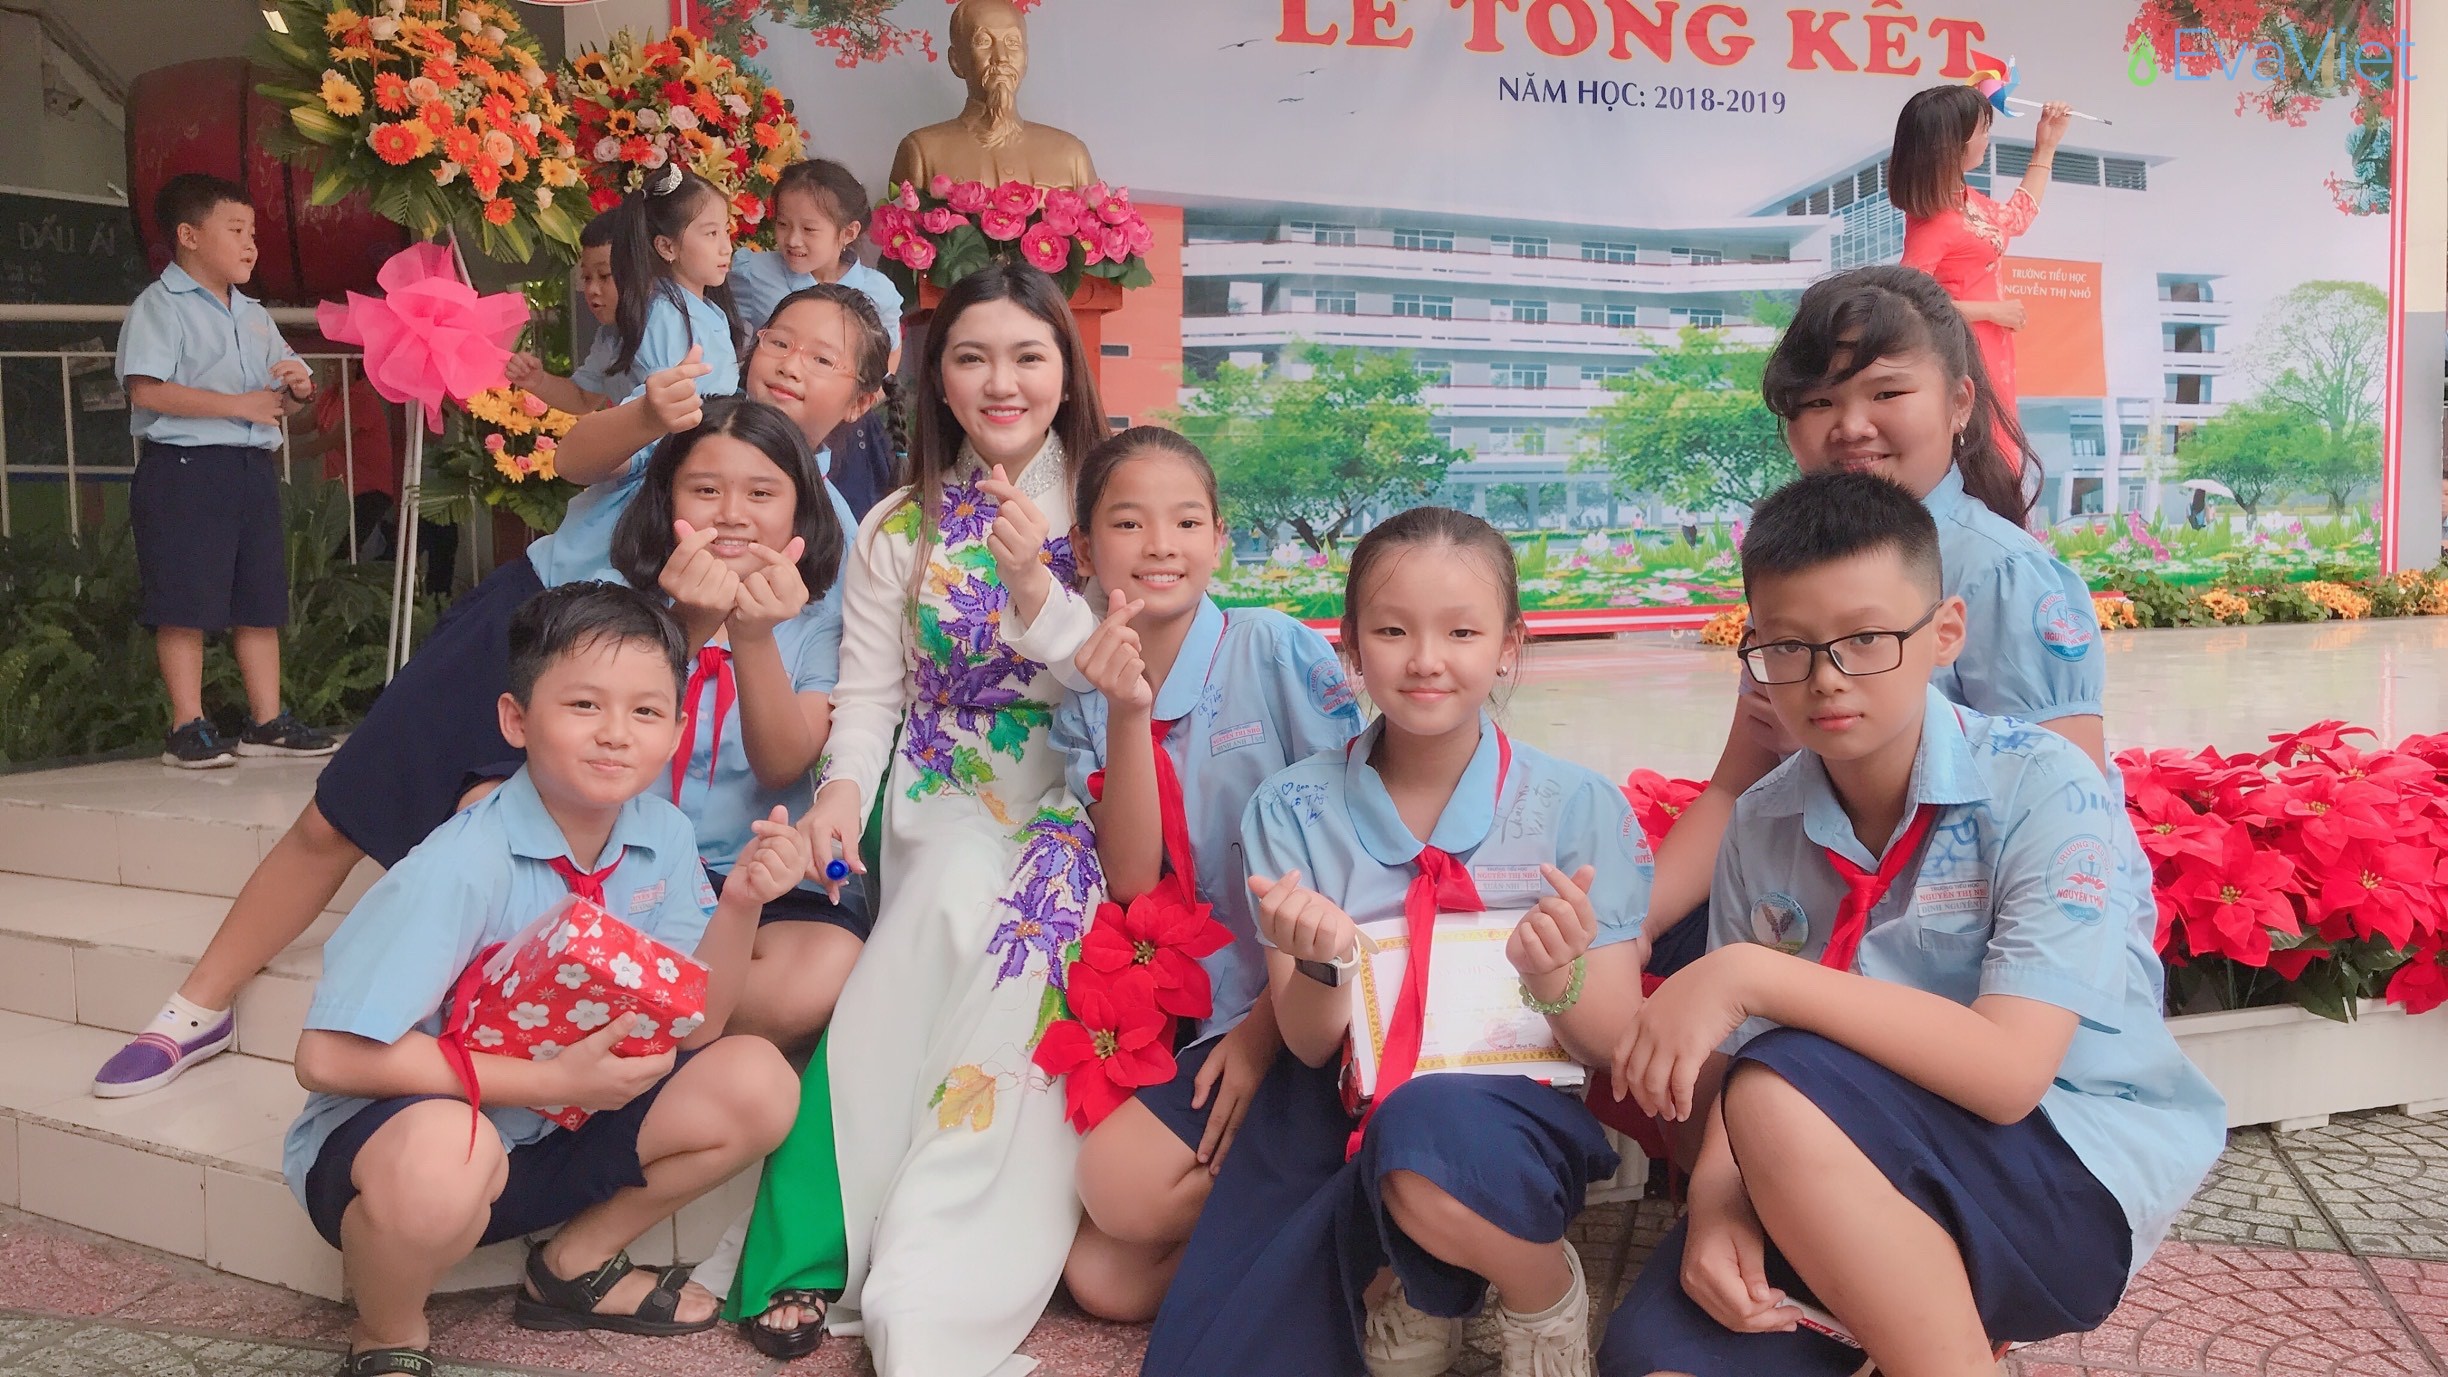 Hình ảnh cô giáo xinh đẹp cùng với học trò của mình tại lễ tổng kết năm học 2018-2019